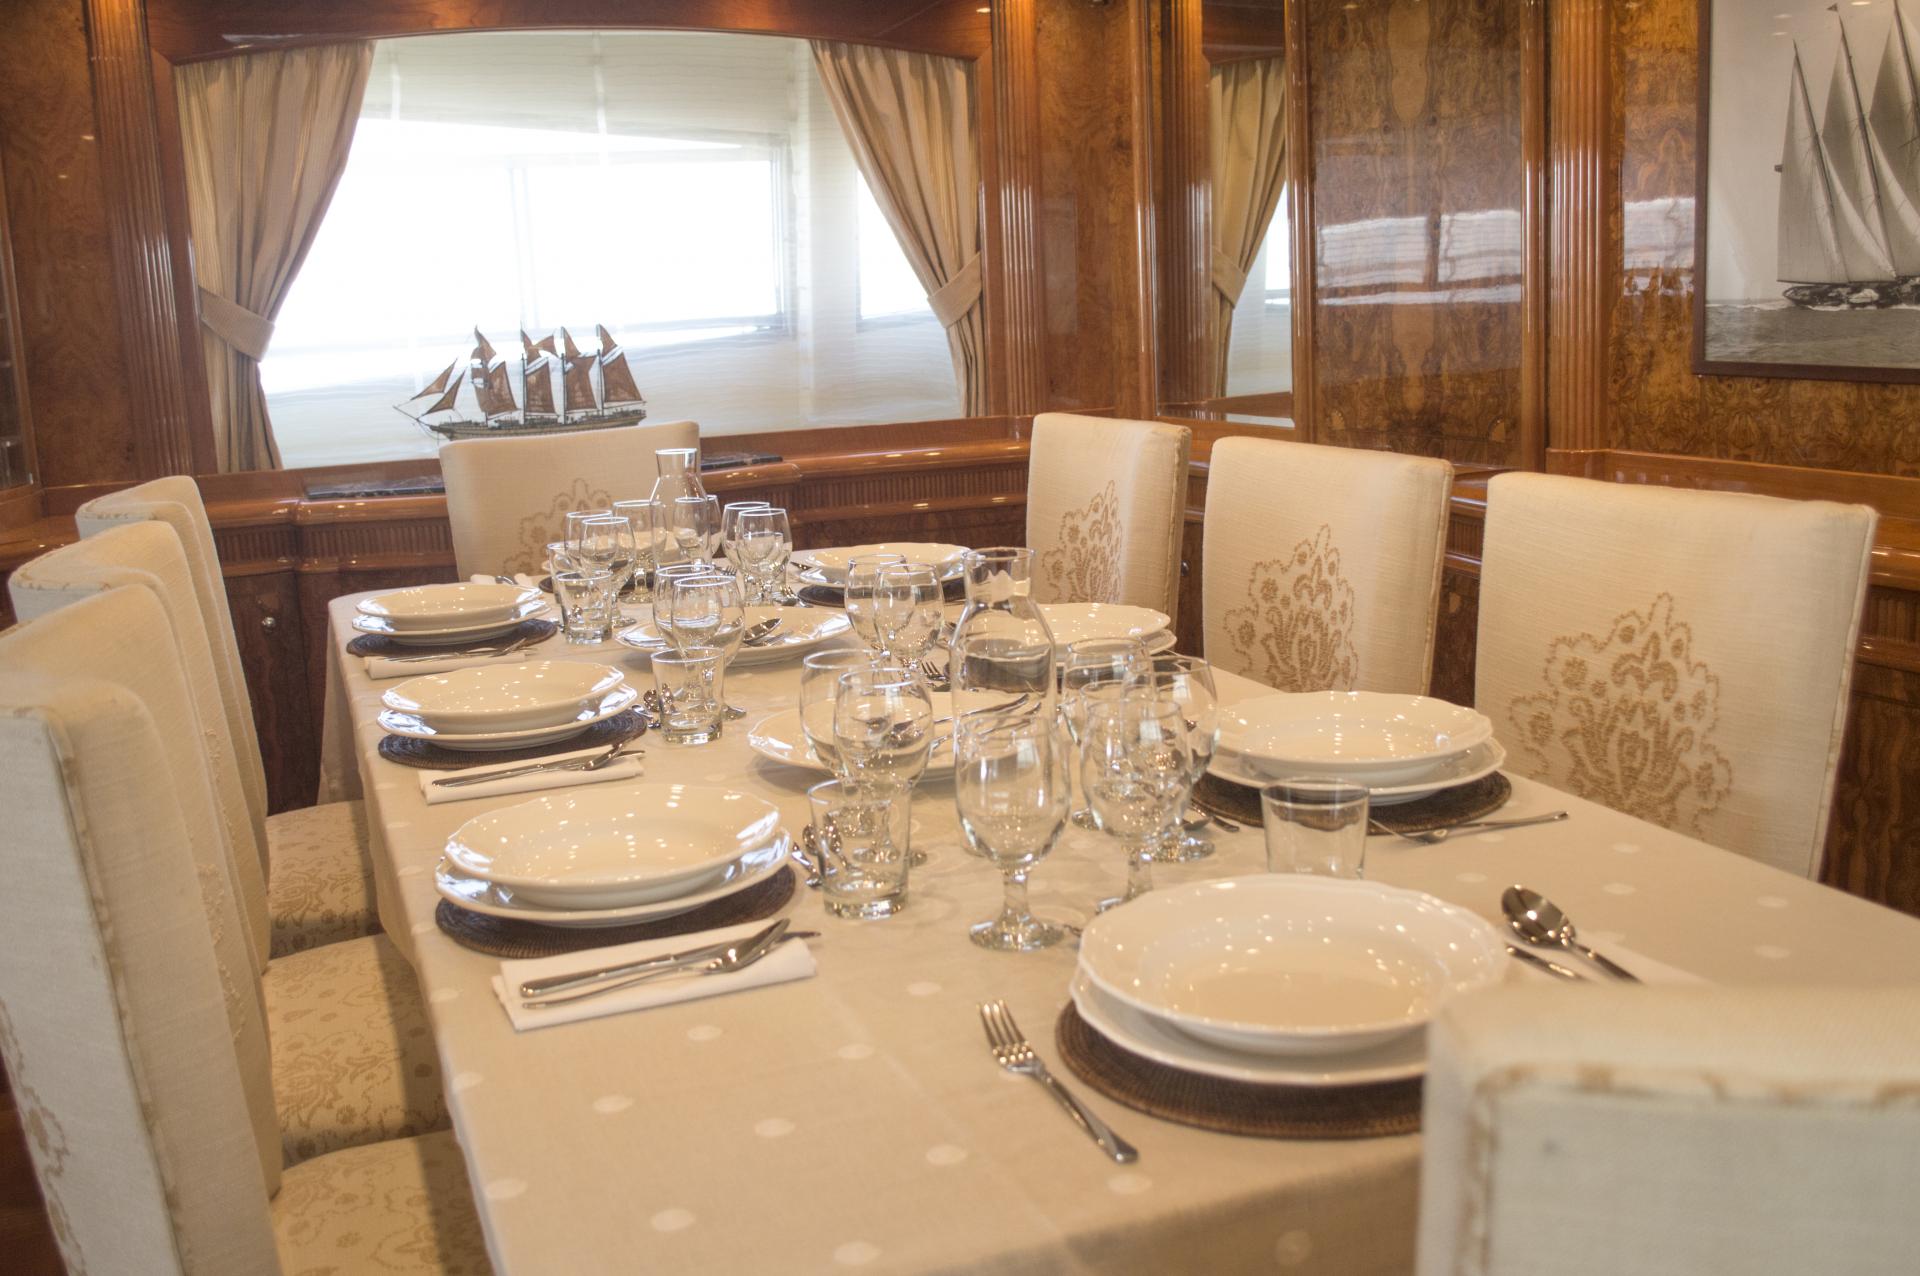 Kirios-astondoa102-yacht-dining